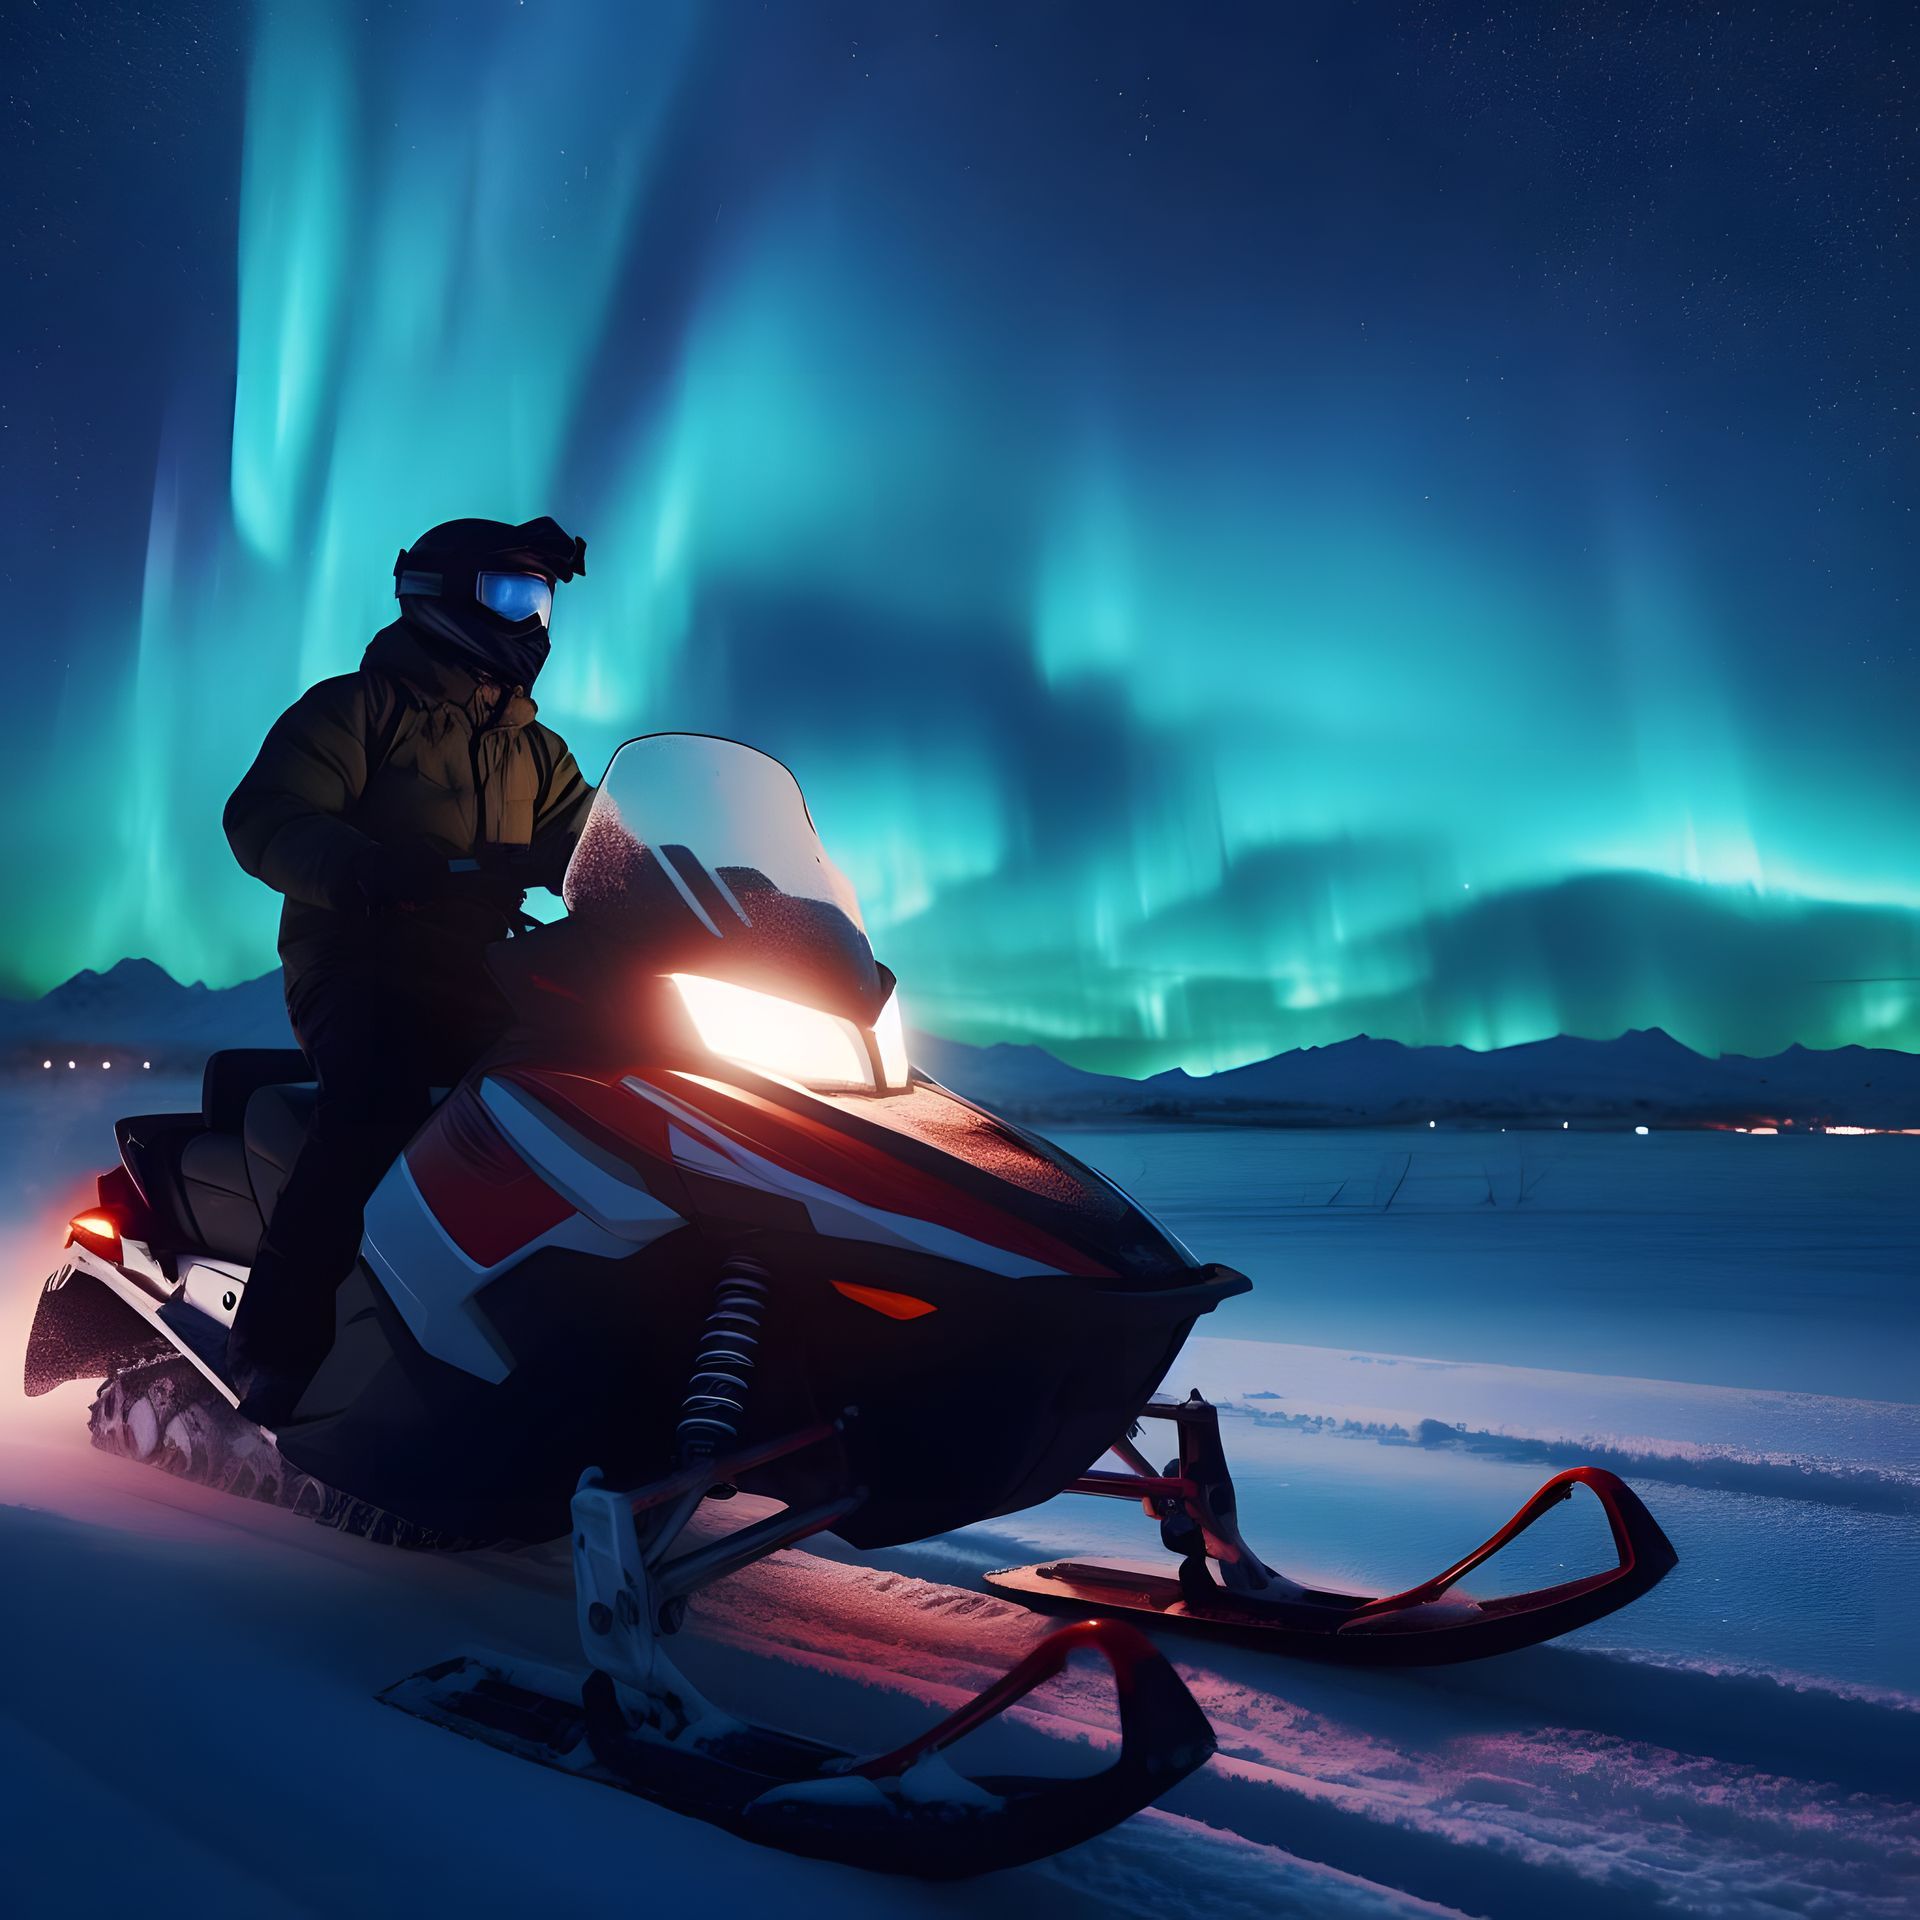 a man is riding a snowmobile under the aurora borealis